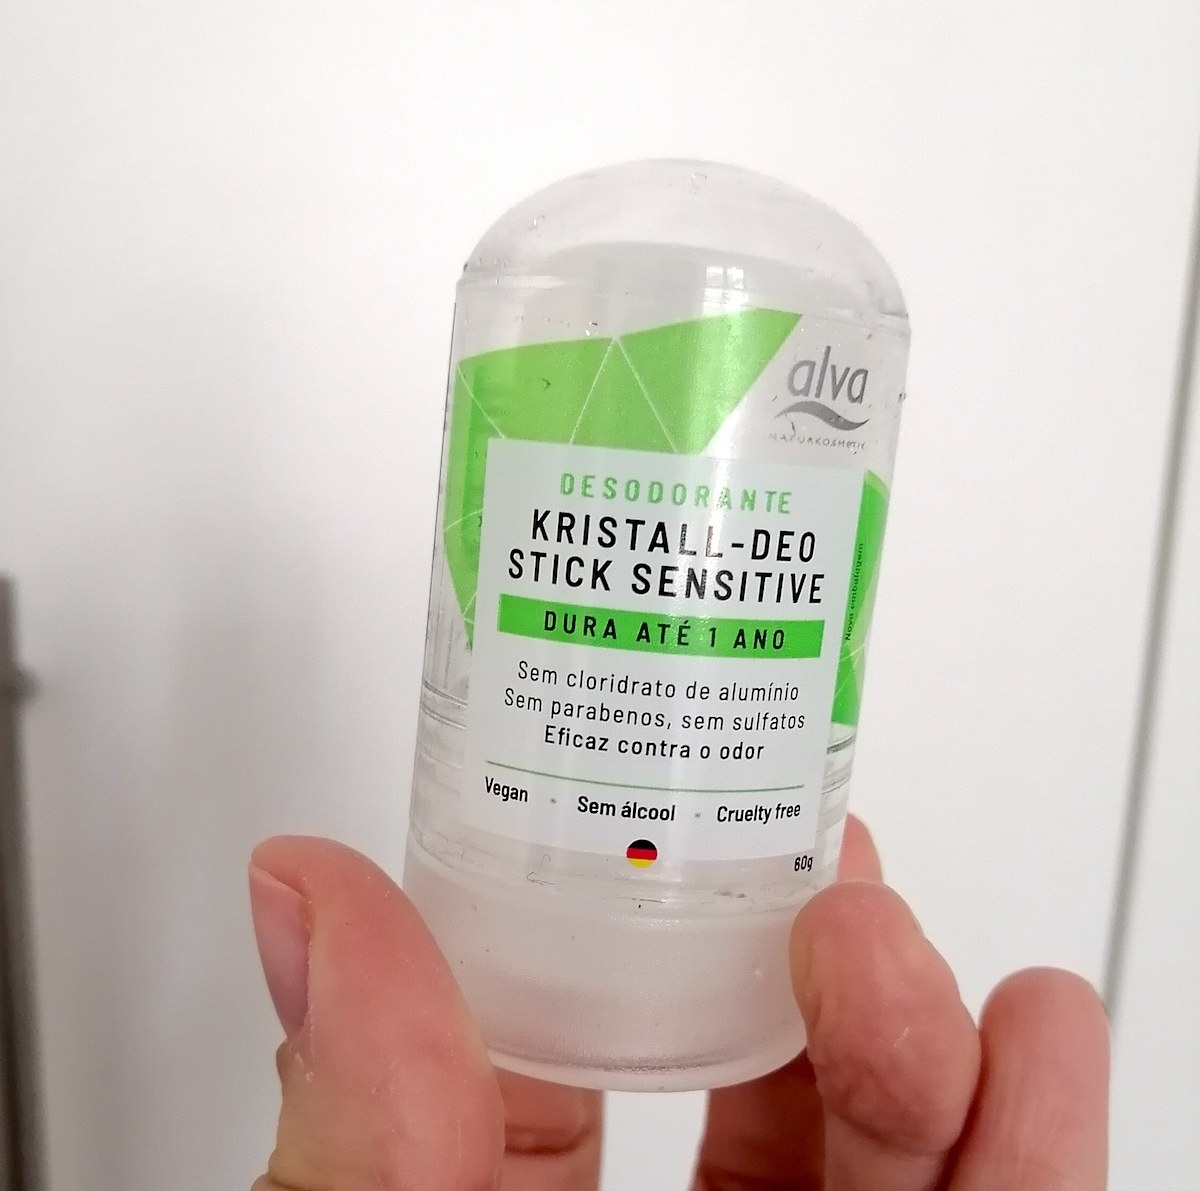 Embalagem pequena de desodorante Kristall-Deo Stick Sensitive da marca Alva